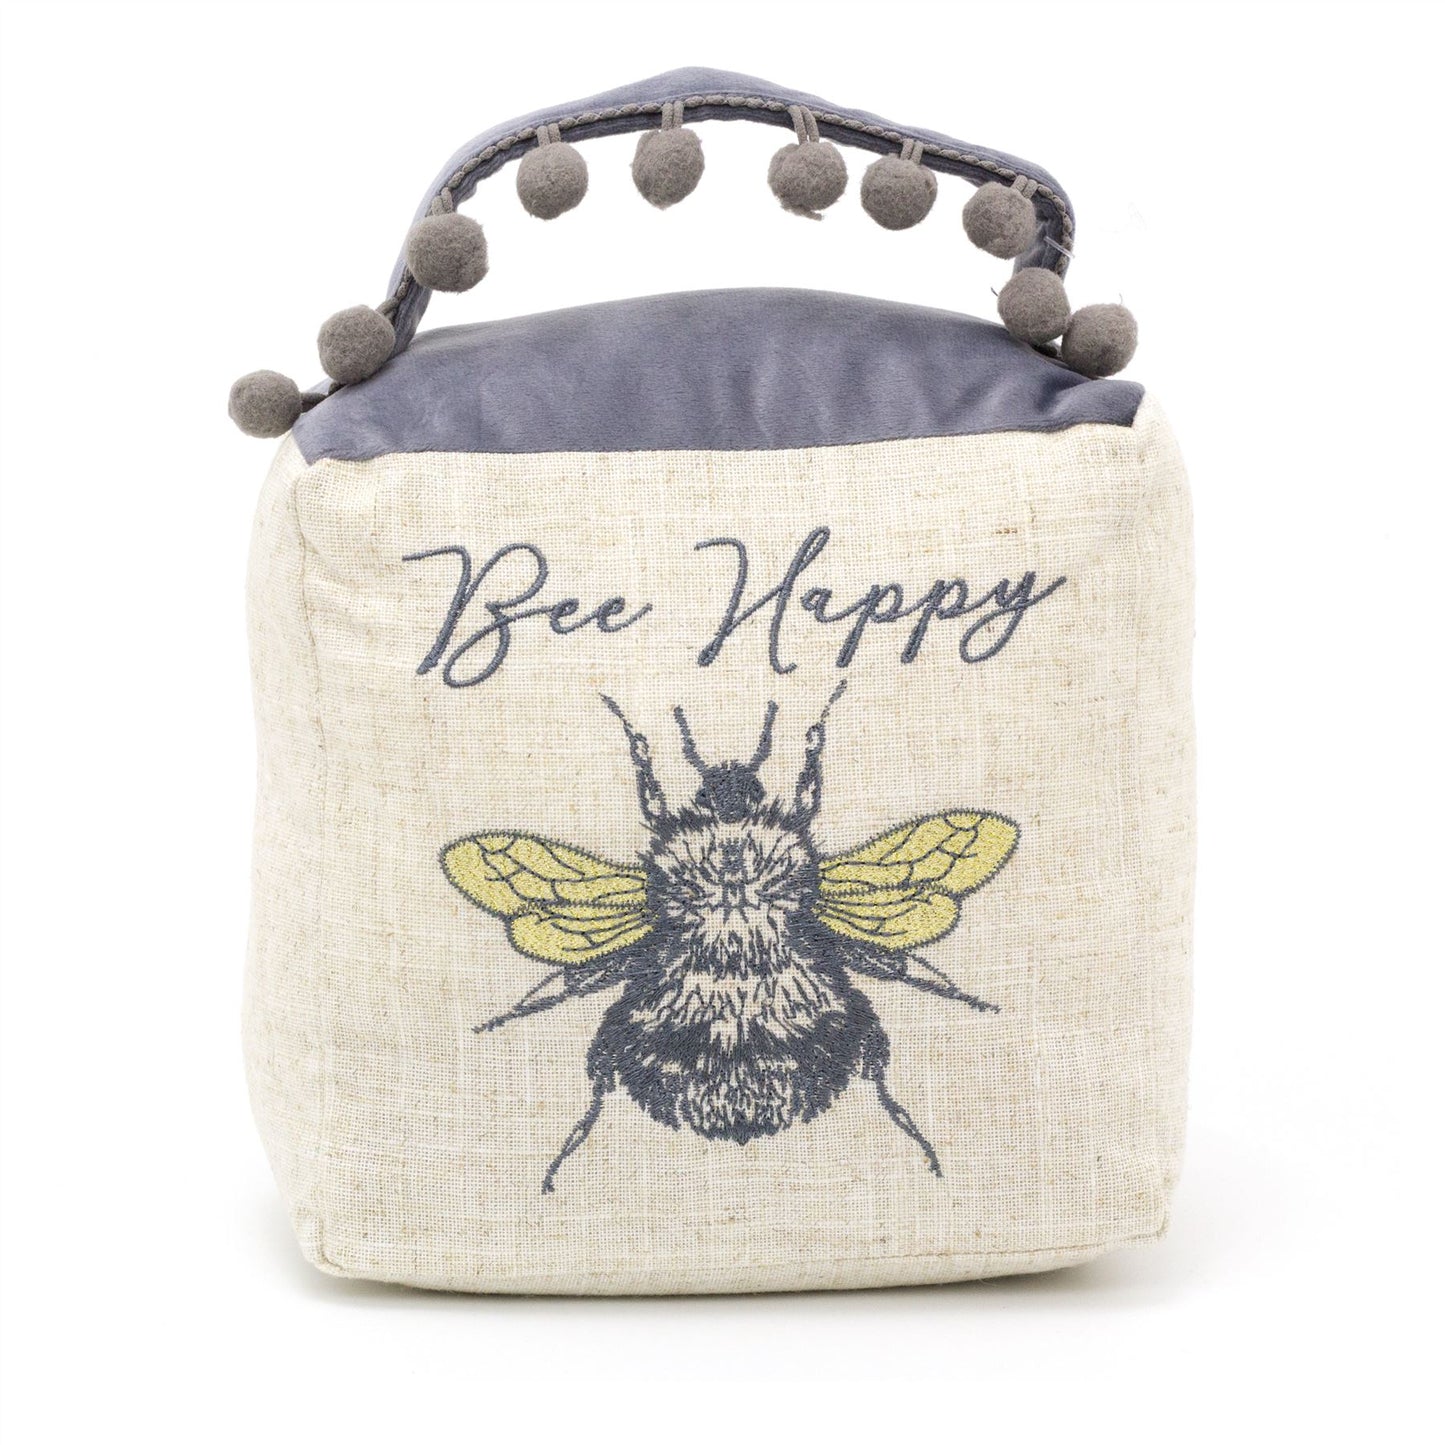 Bee Happy Cube Fabric Bee Doorstop | Honey Bee Pom Pom Doorstopper | Square Bee Door Stop With Handle